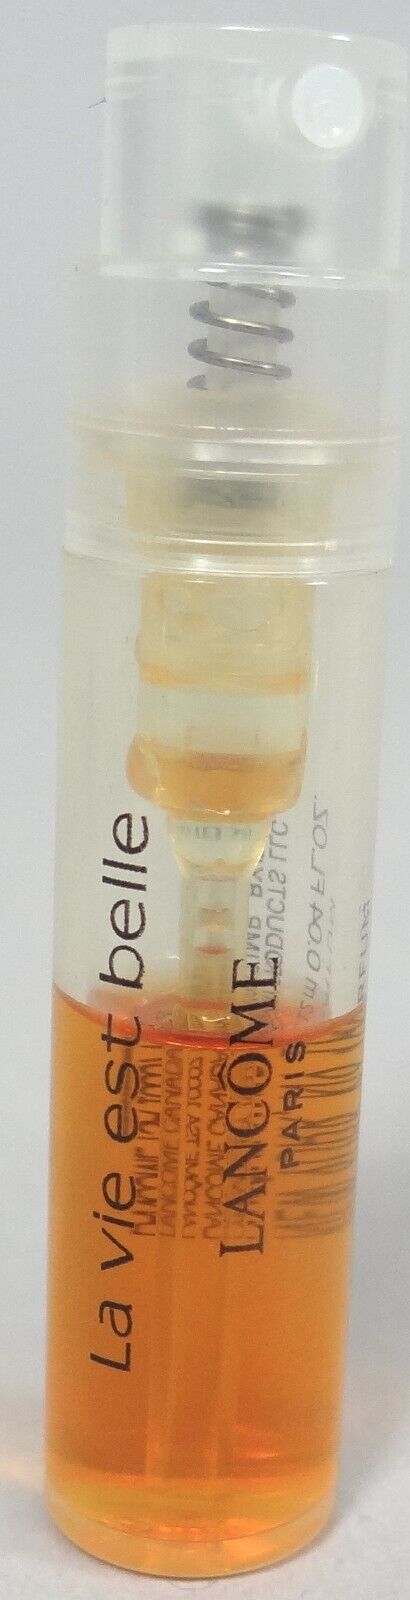 Lancome La Vie Est Belle Perfume Parfum Spray Mini Travel Sample .04 oz 1.2 ml